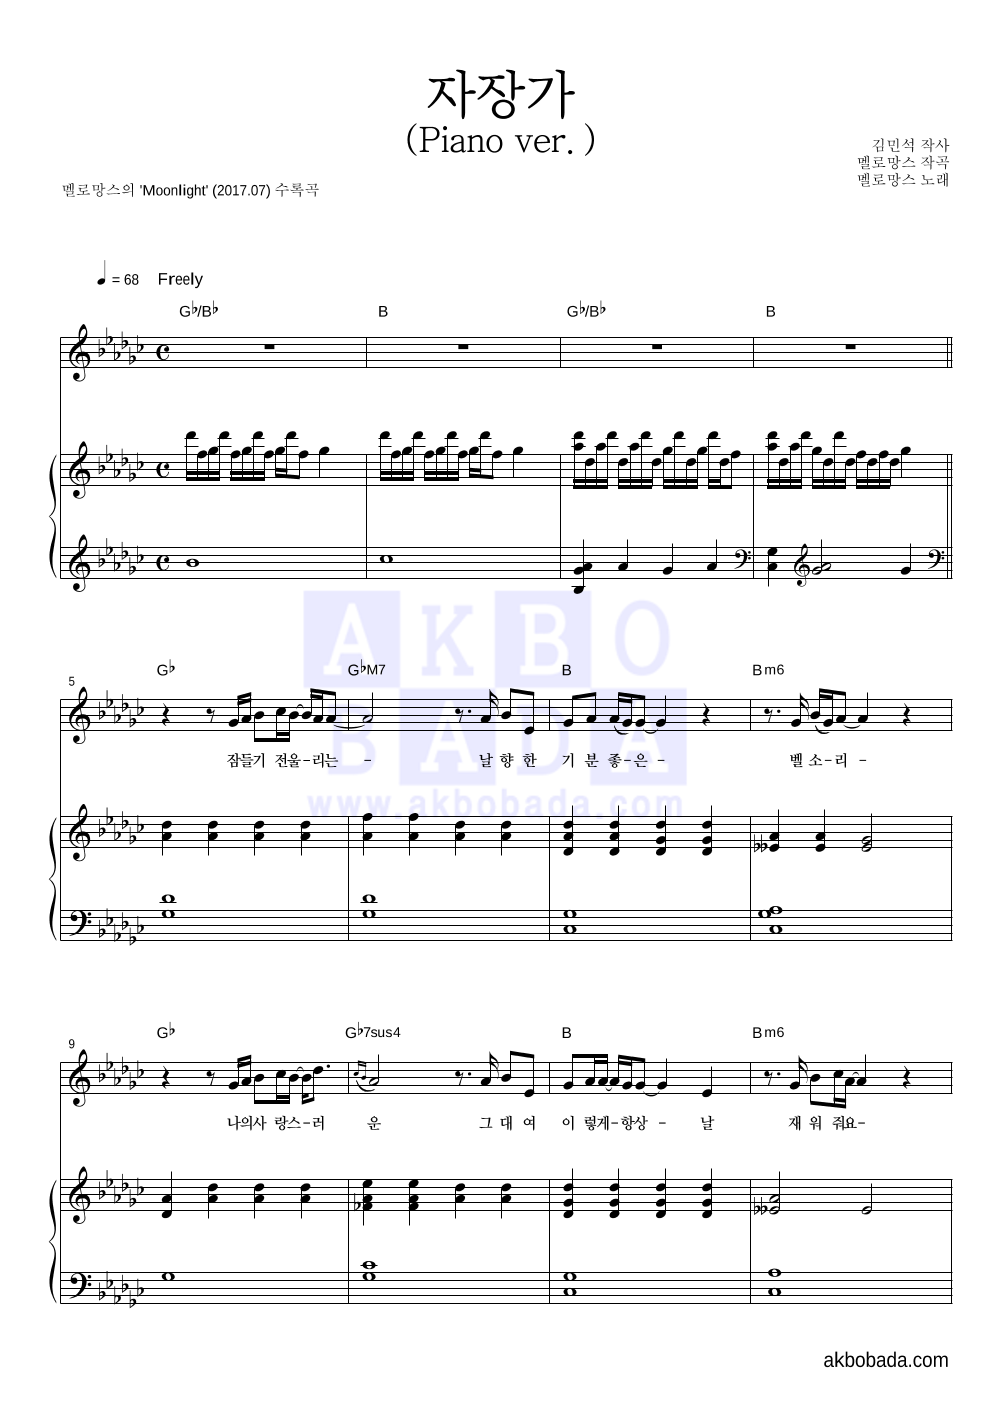 멜로망스 - 자장가 (Piano Ver.) 피아노 3단 악보 